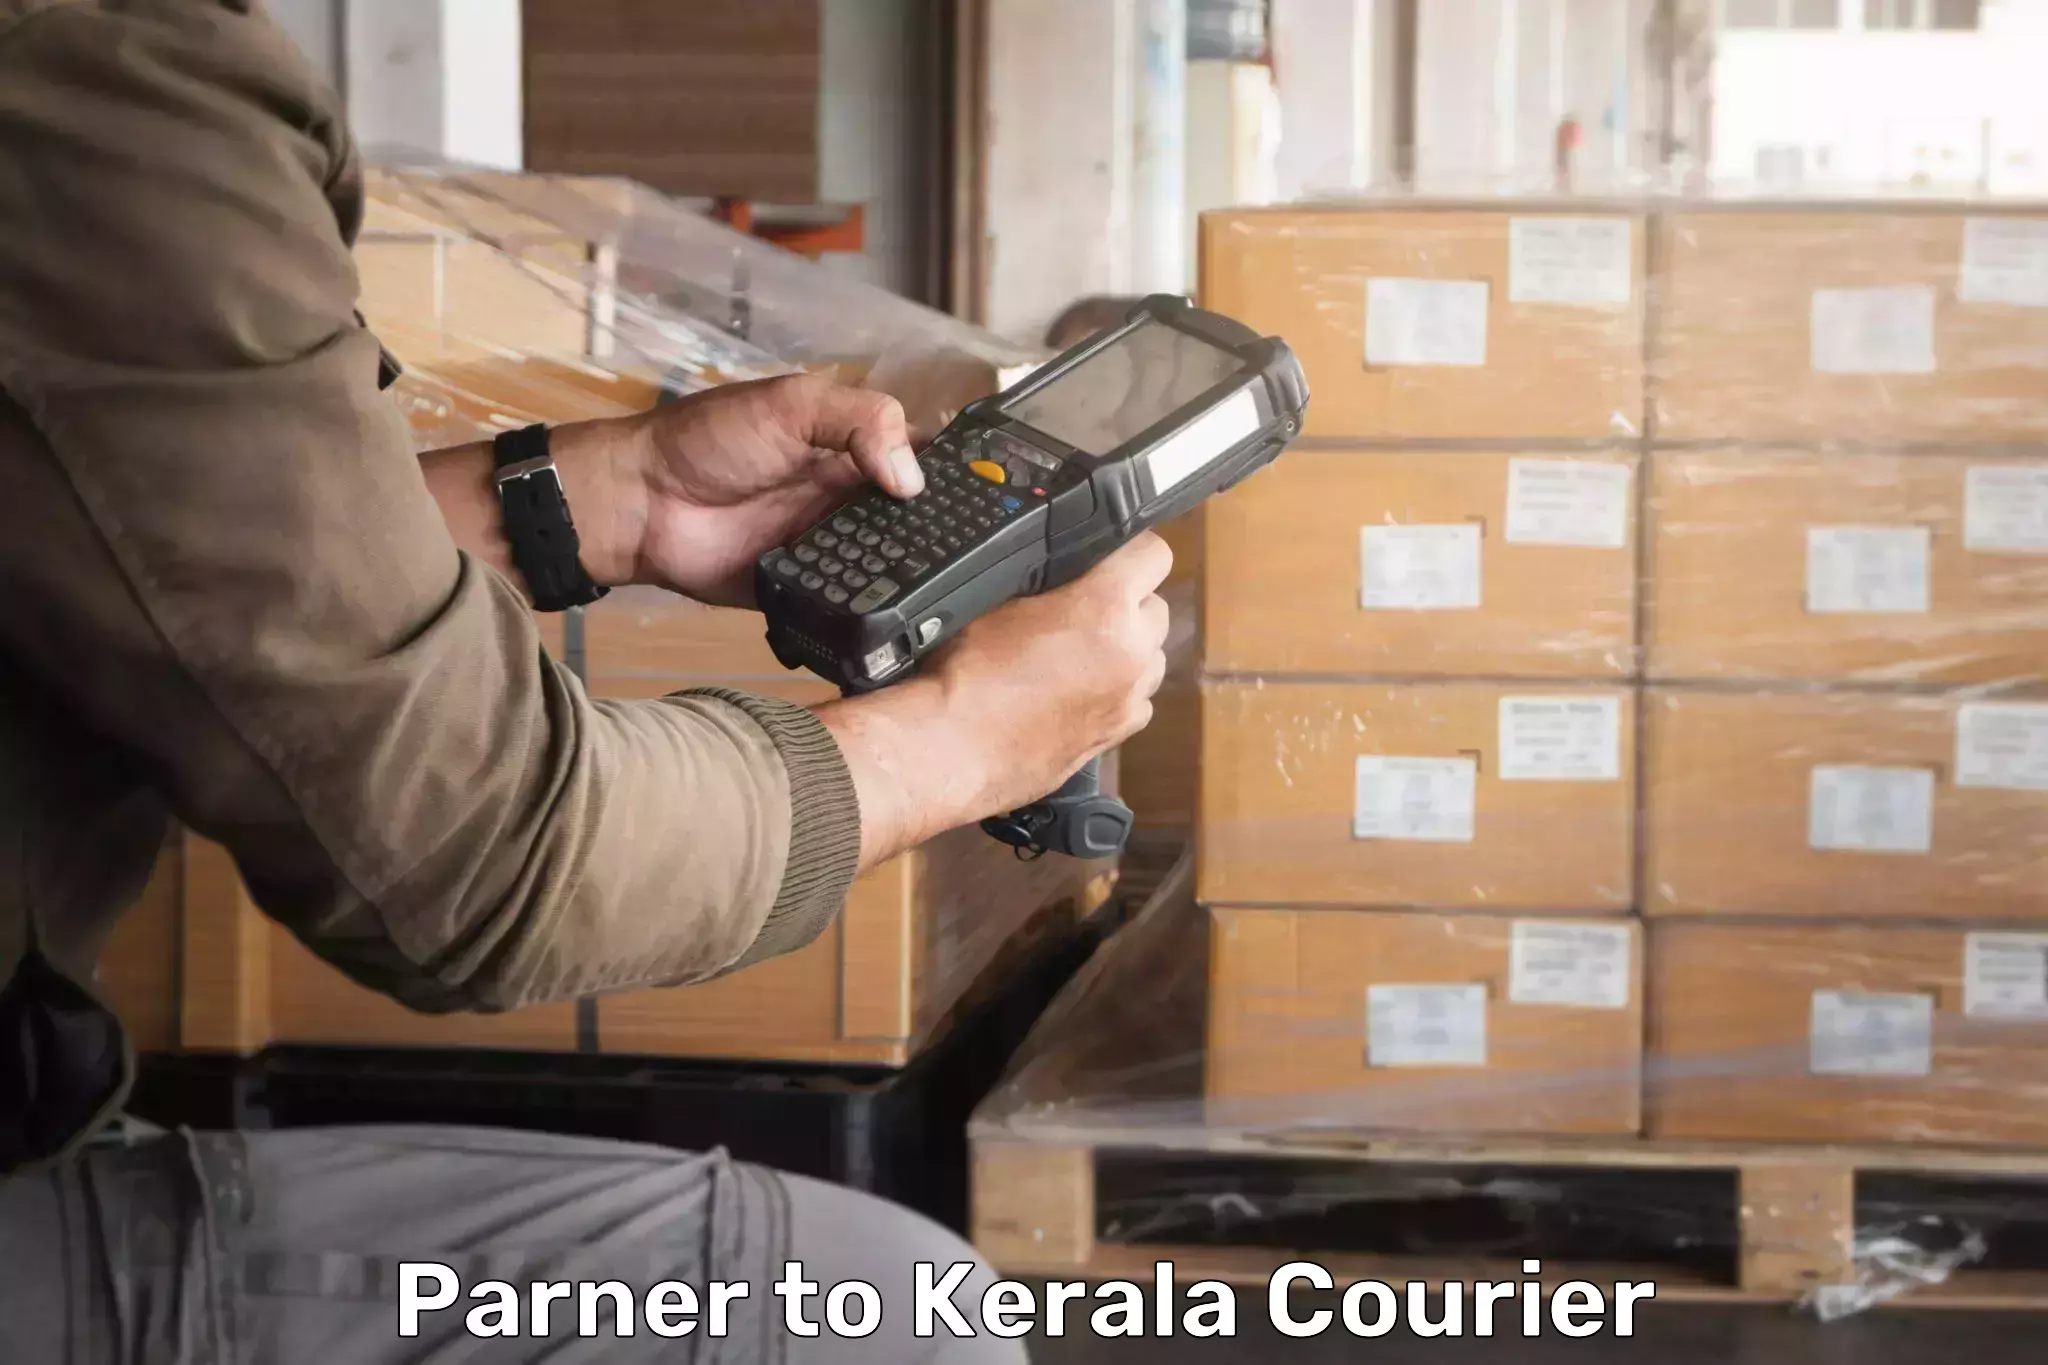 Digital courier platforms Parner to Kuthumkal